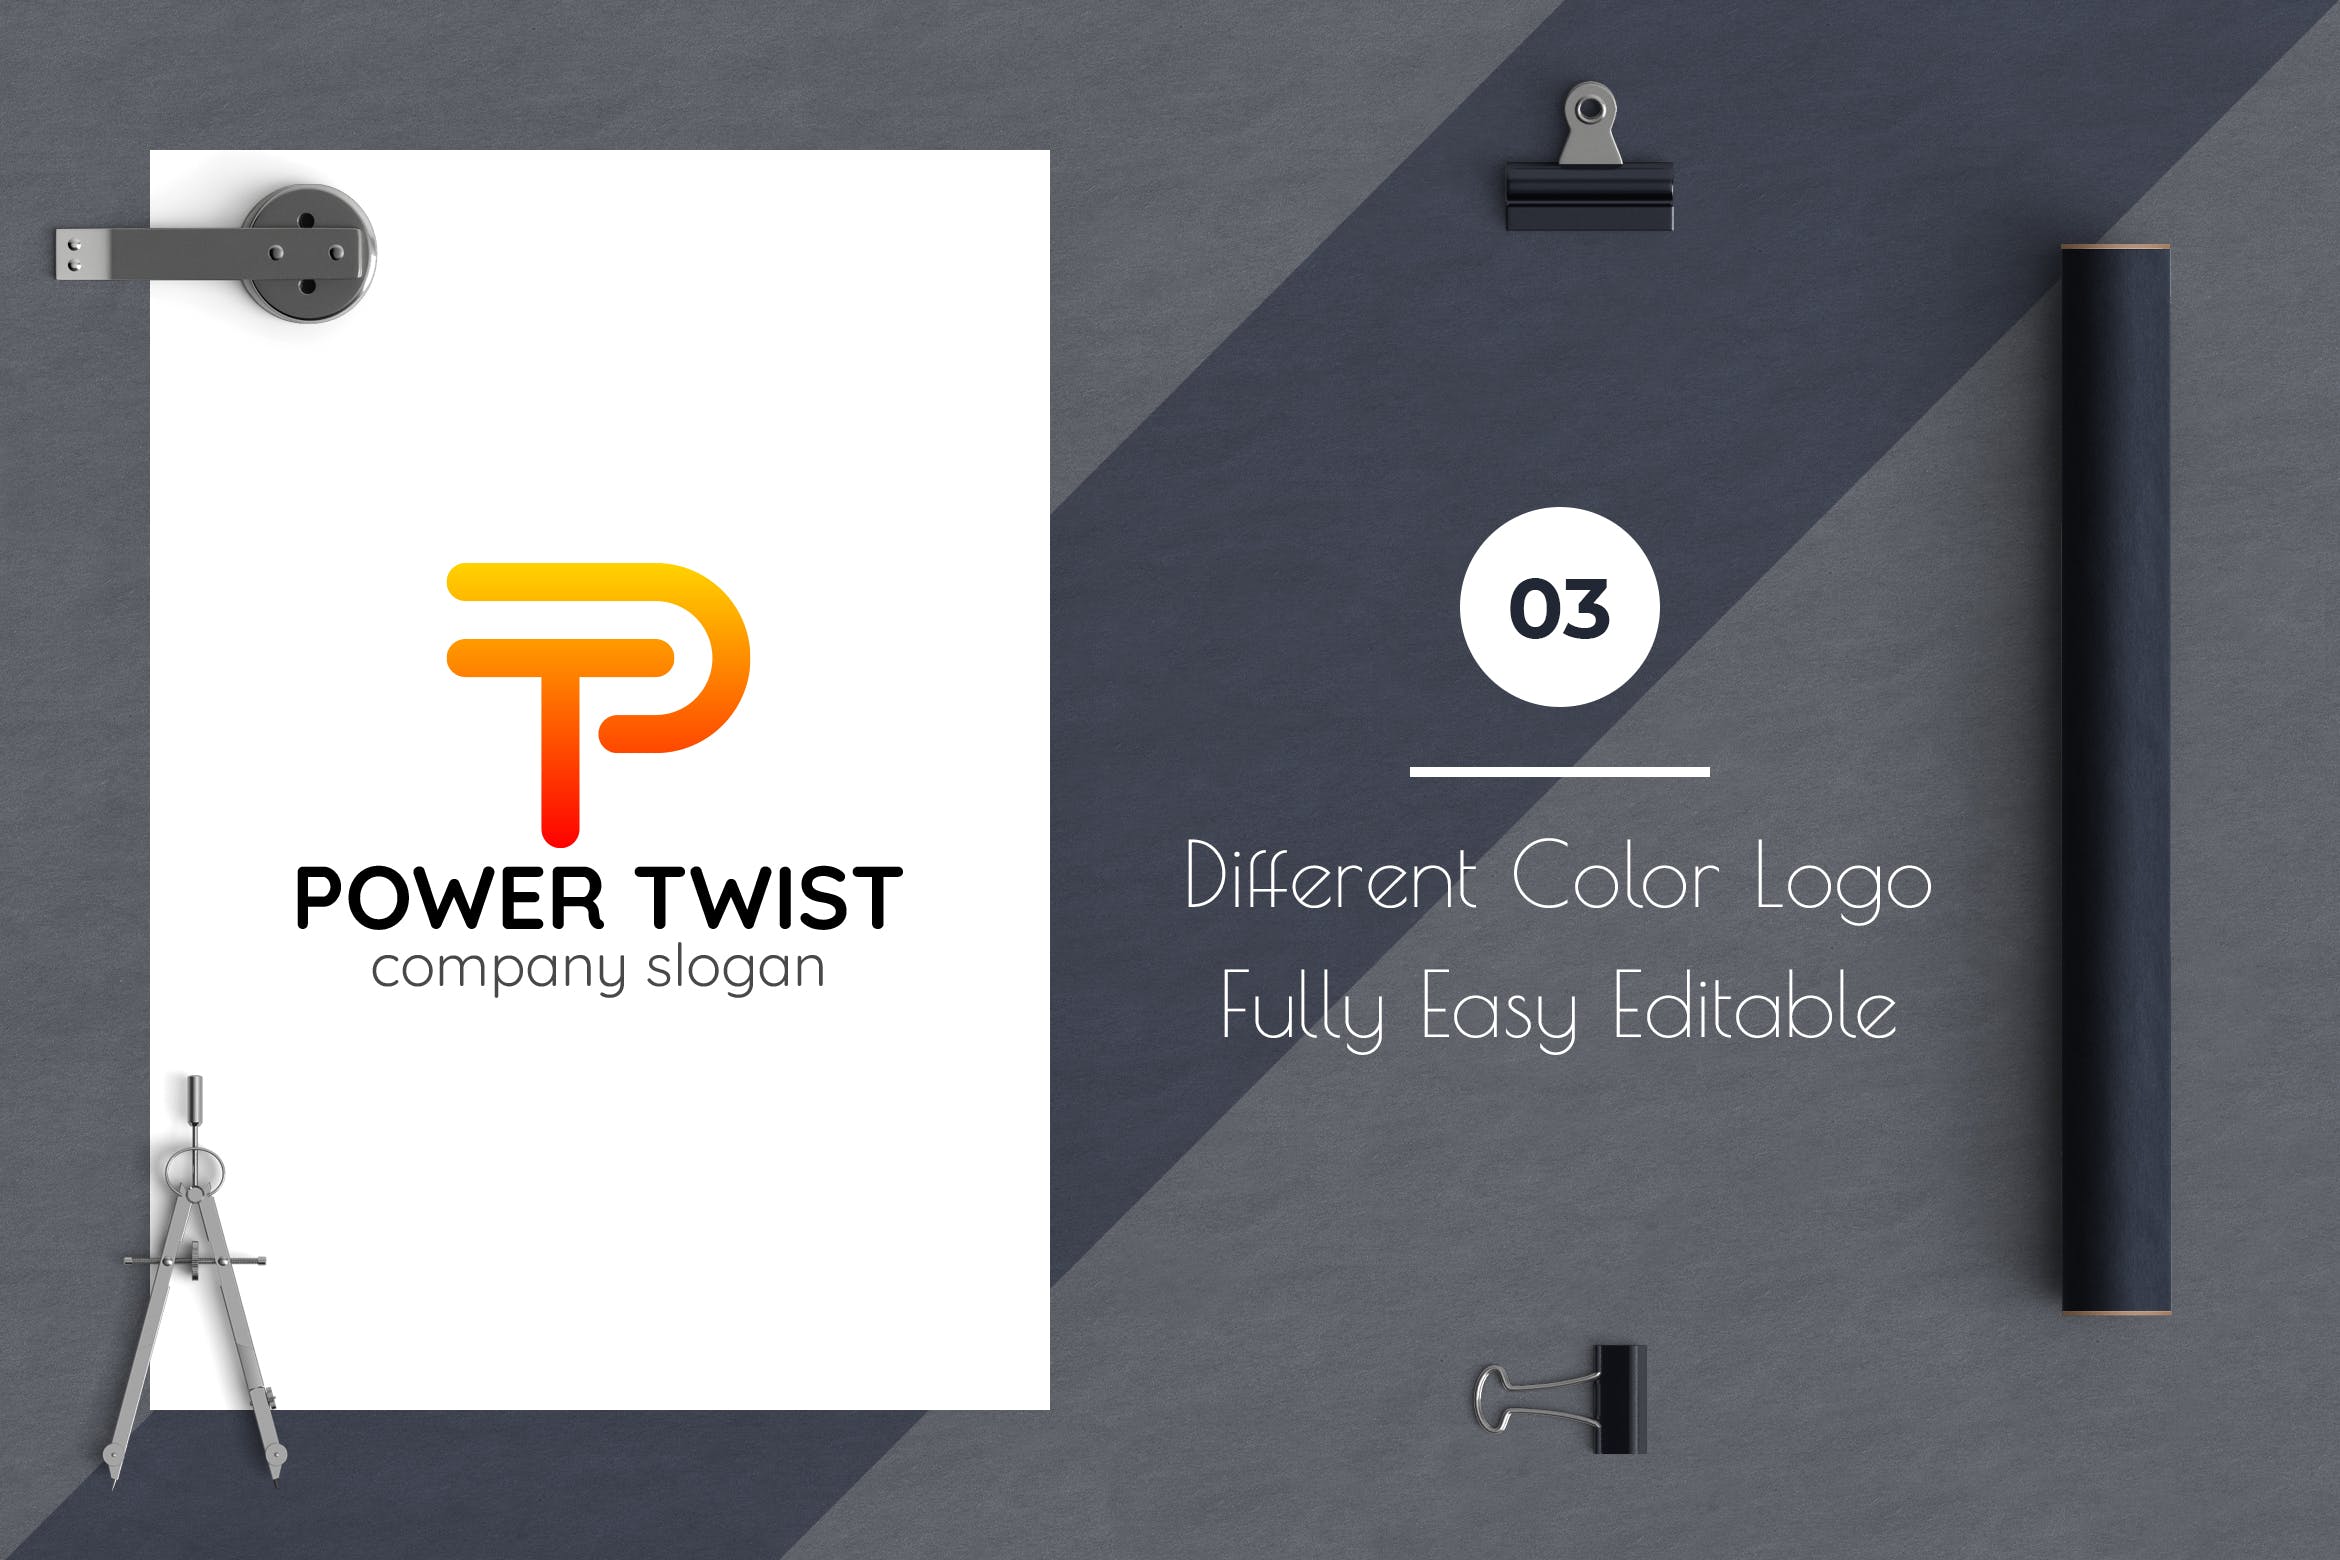 P字母图形创意Logo设计第一素材精选模板 Power Twist Creative Logo Template插图